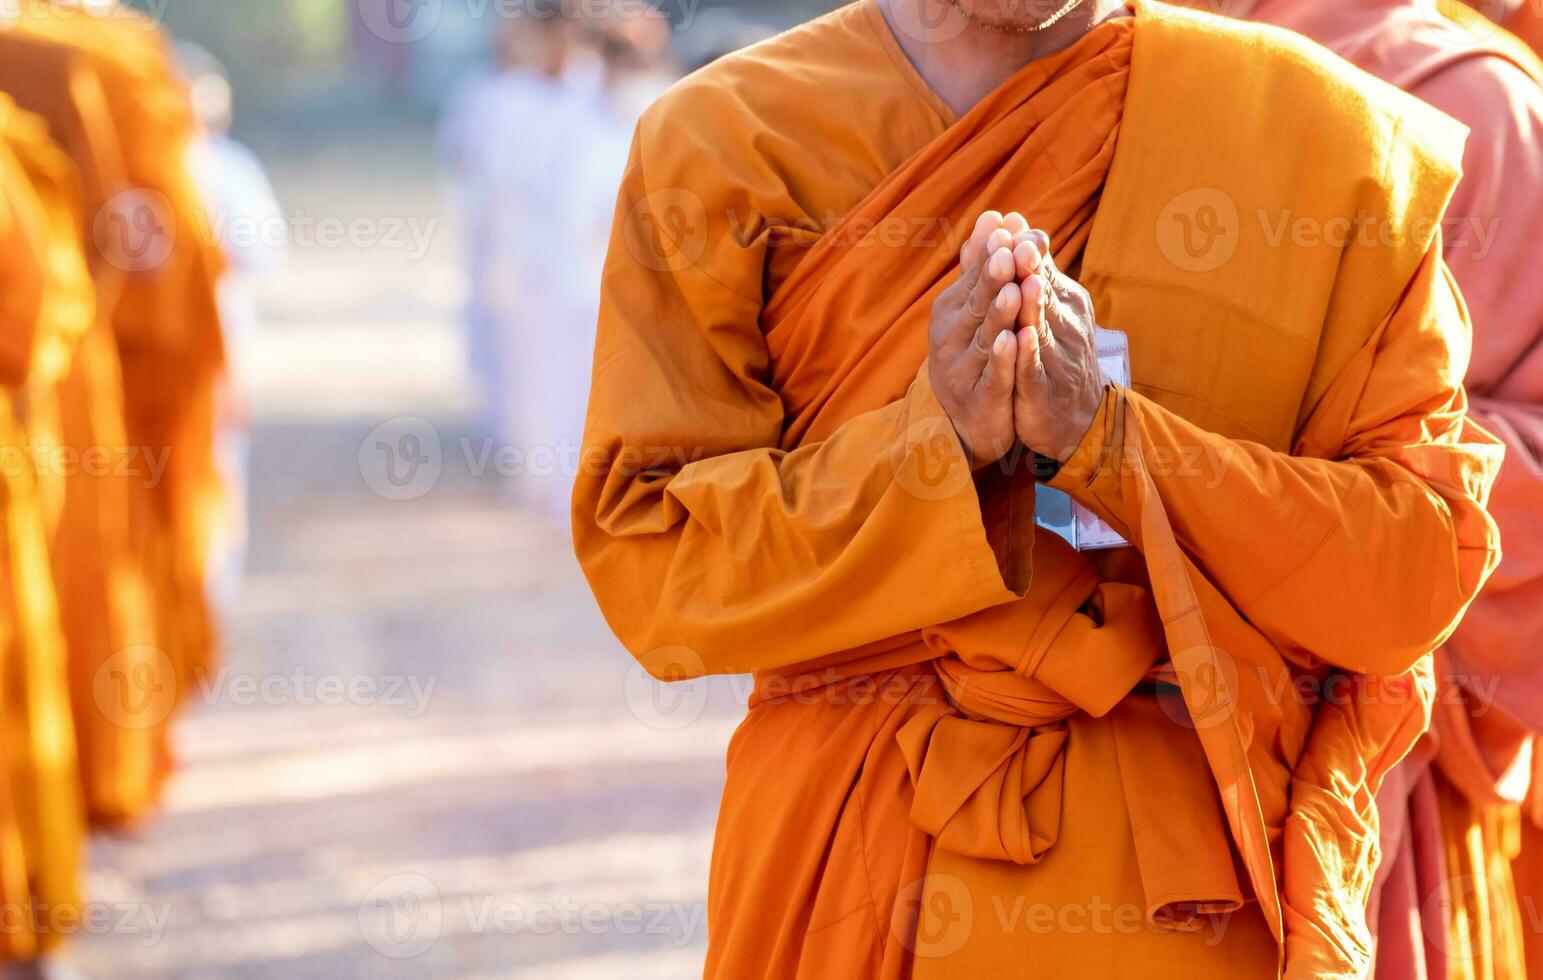 Buddhist Mönch ist Stehen mit seine Hände gefaltet im das gestalten von ein Lotus zu ausführen etwas religiös Ritual, Uniform Buddhist Mönch, Buddhist Mönch beten foto